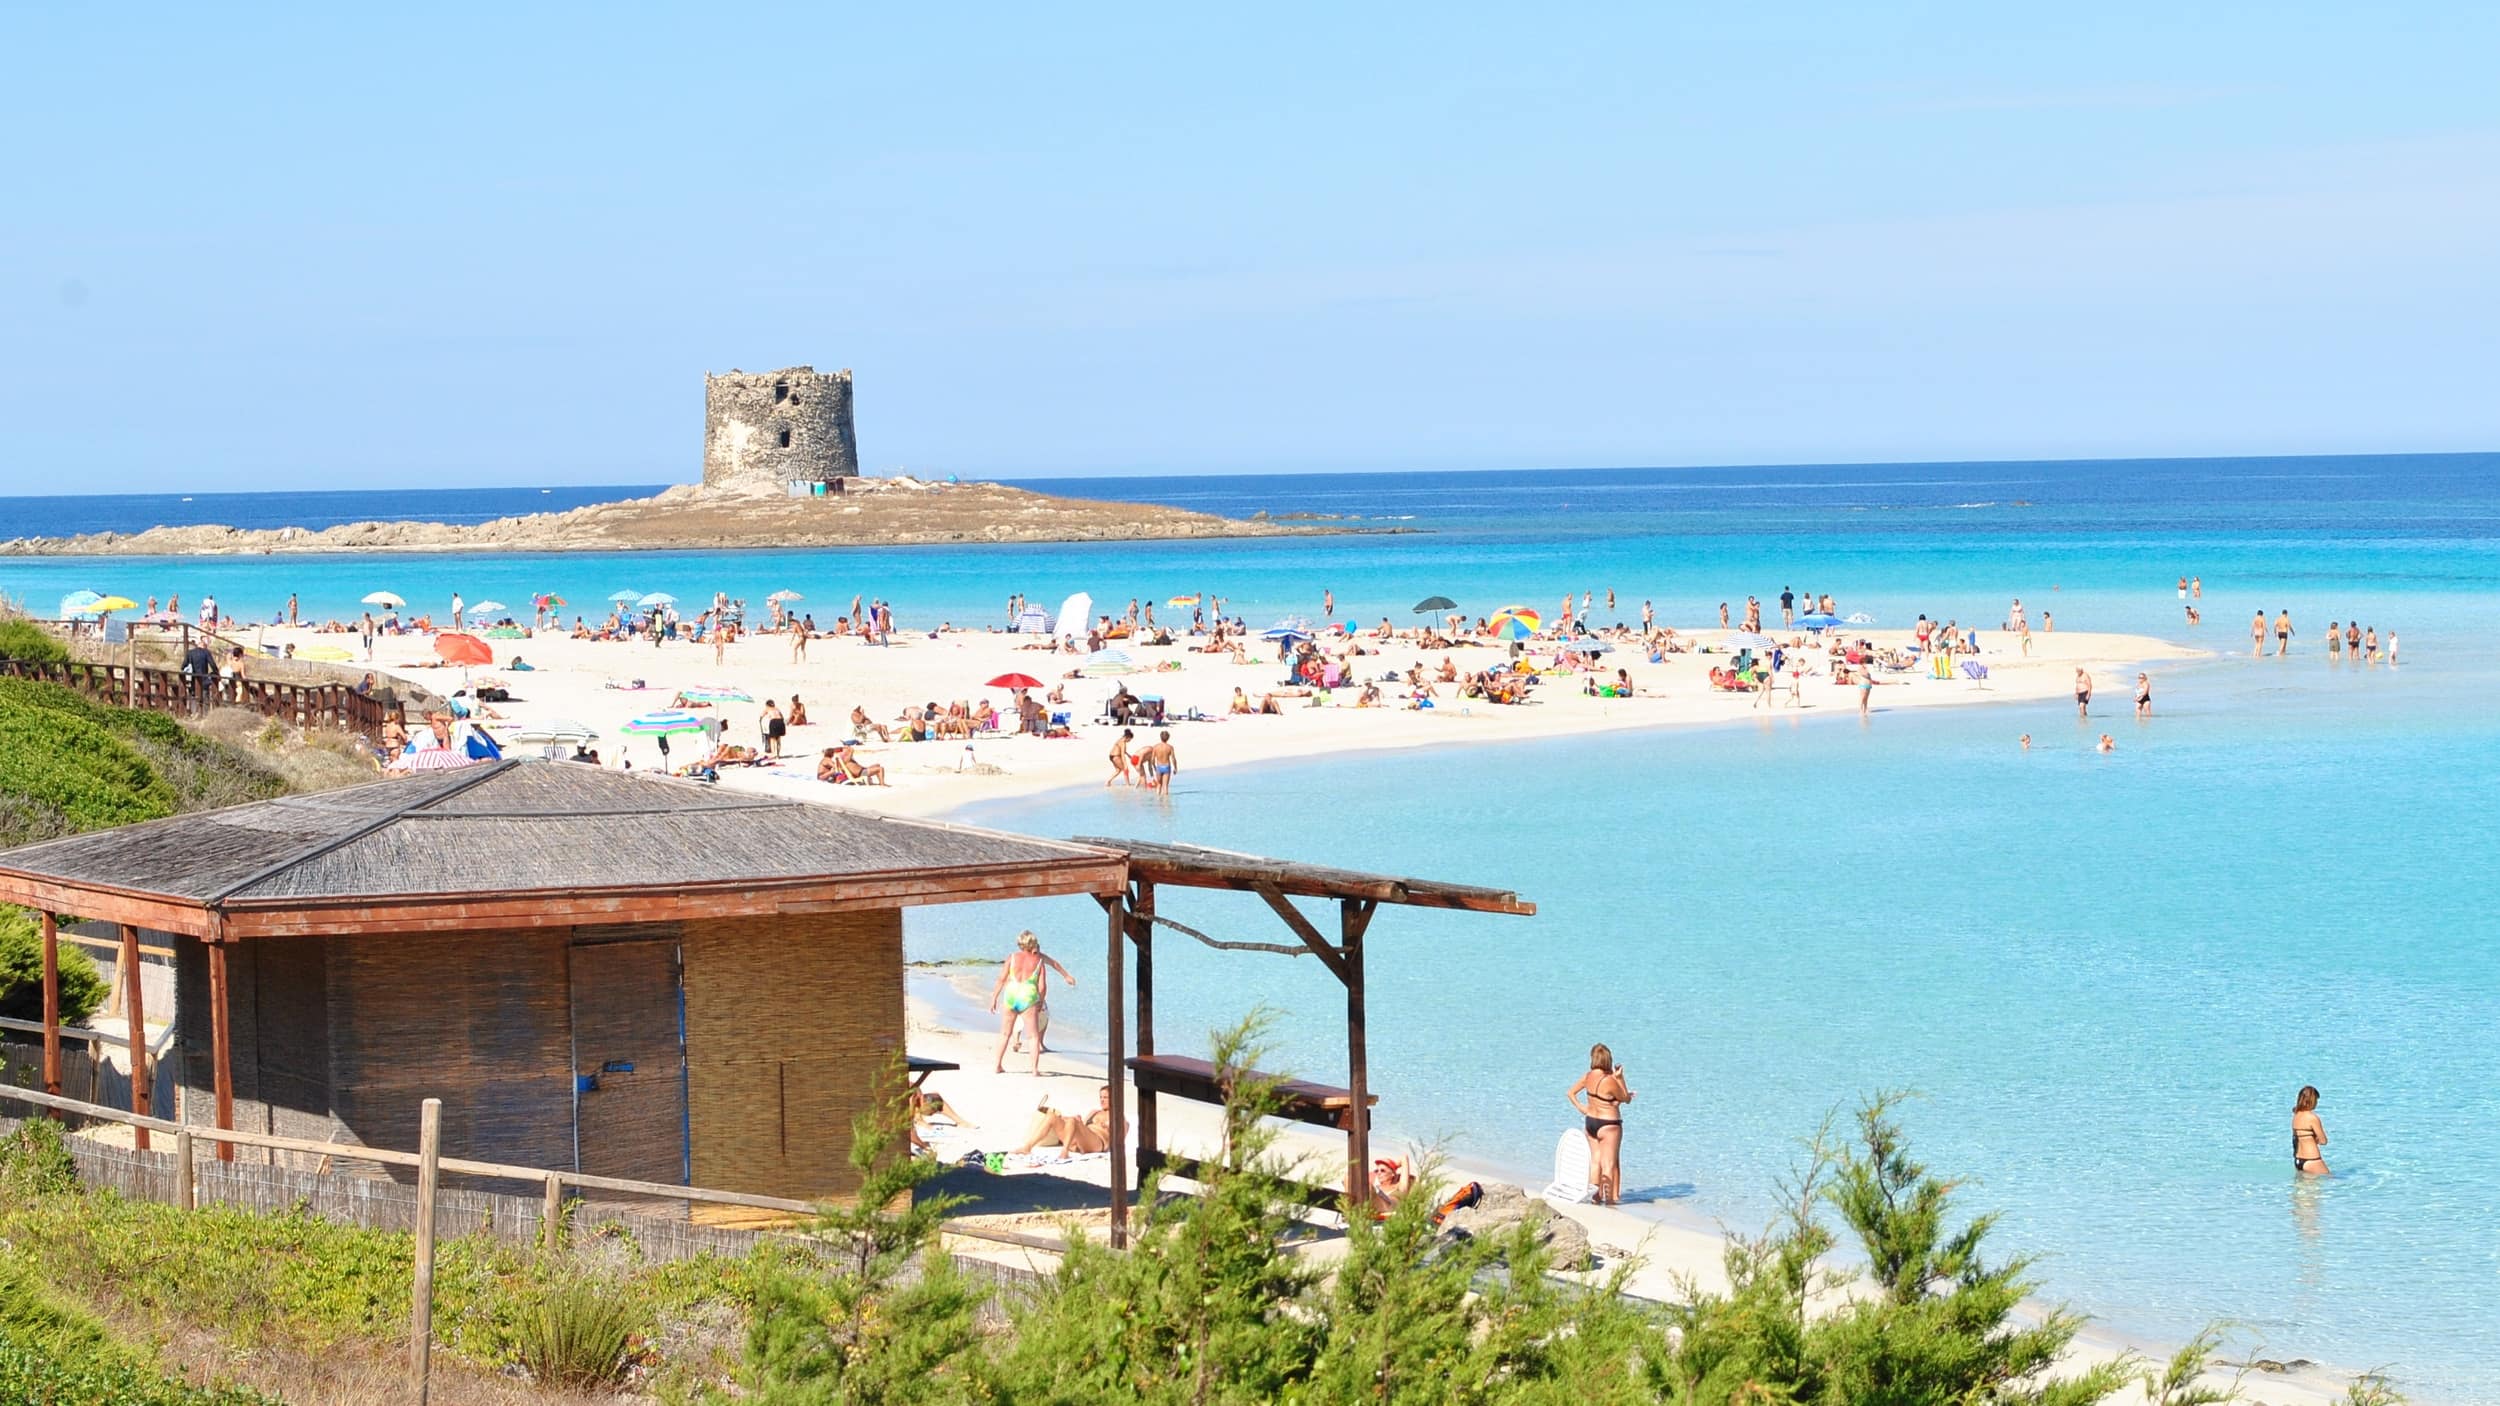 Entspannter Urlaub: Ferienhaus in Sardinien mieten